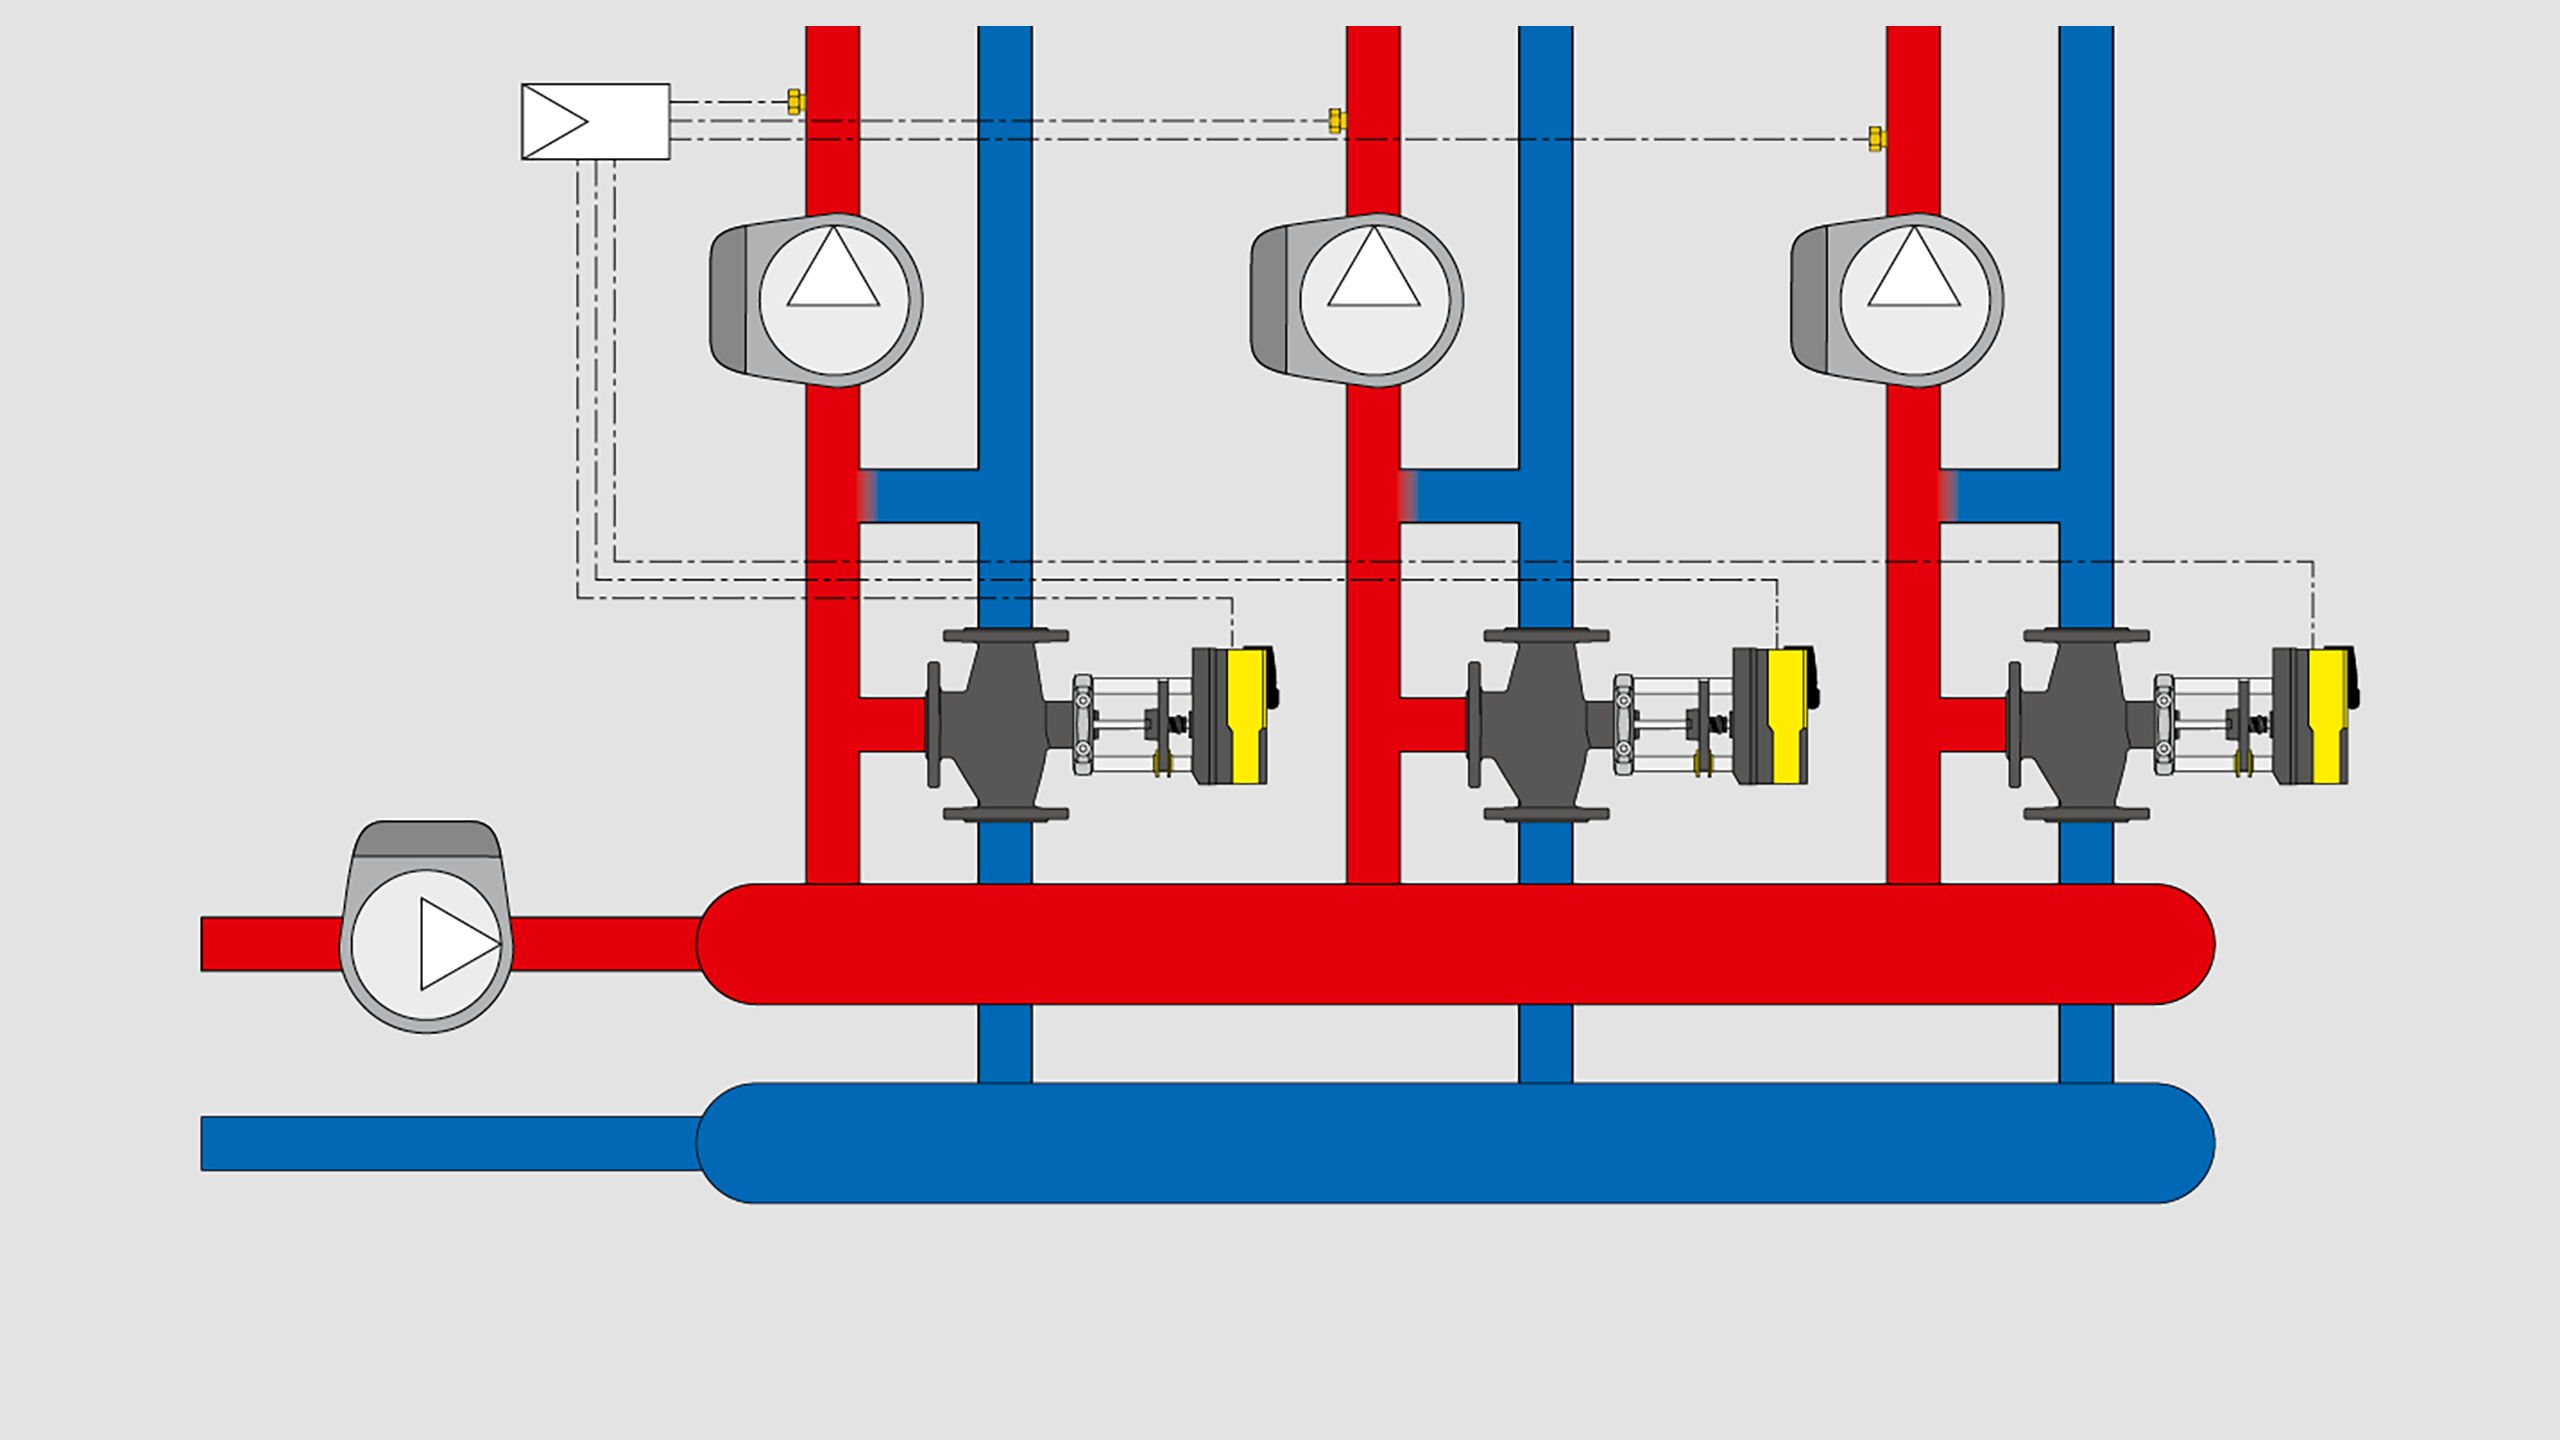 Schema applicativo - Regolazione con valvole a 3 vie in centrale termica medio grande senza separatore idraulico